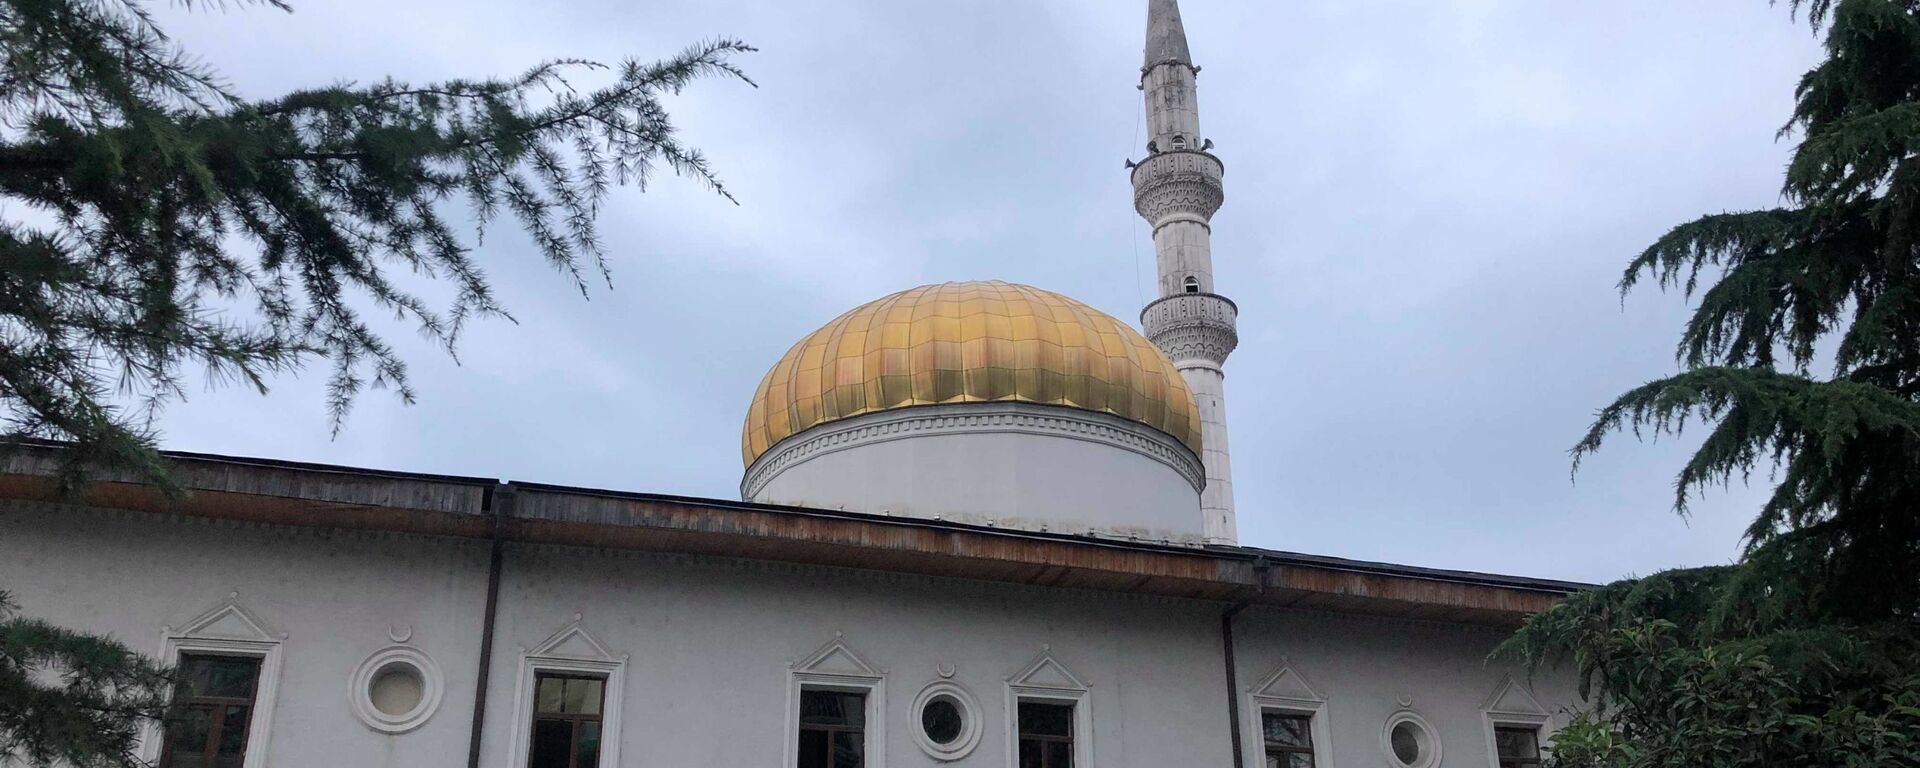 Турецкая мечеть в Батуми - Sputnik Грузия, 1920, 24.05.2020